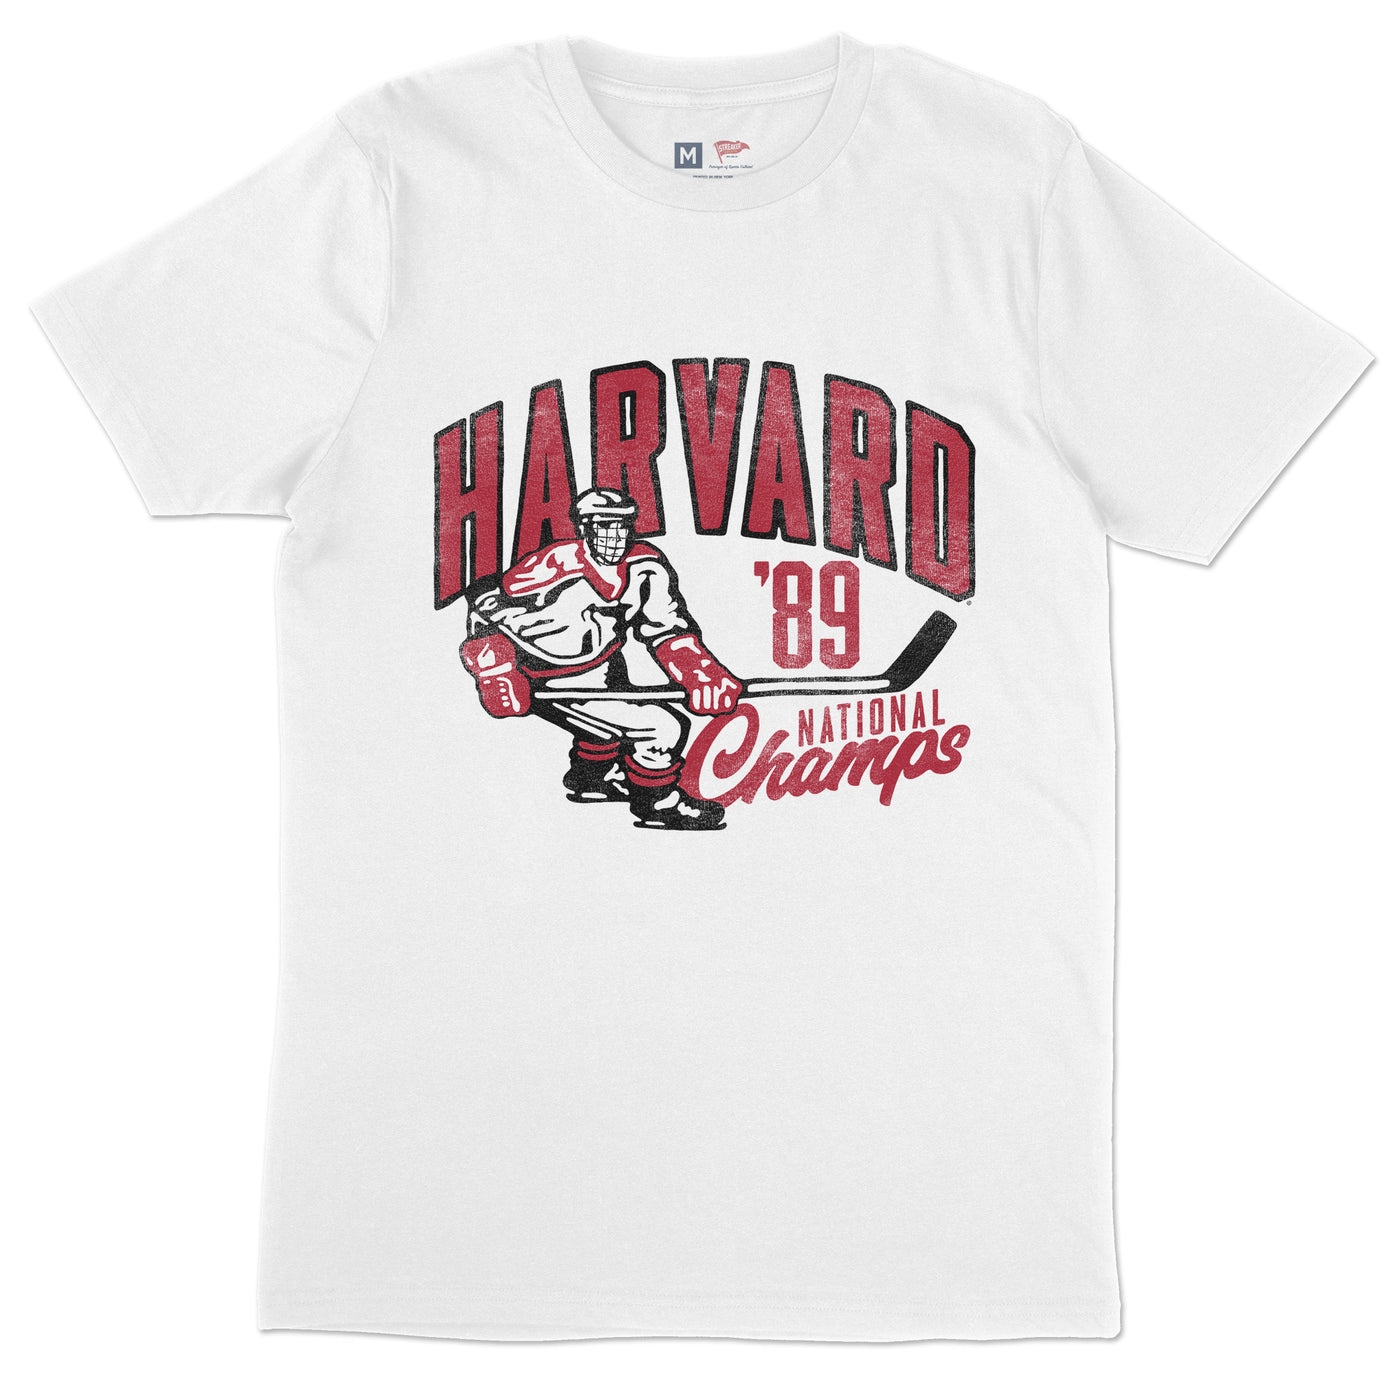 Harvard 1989 Hockey Champions Tee - Streaker Sports